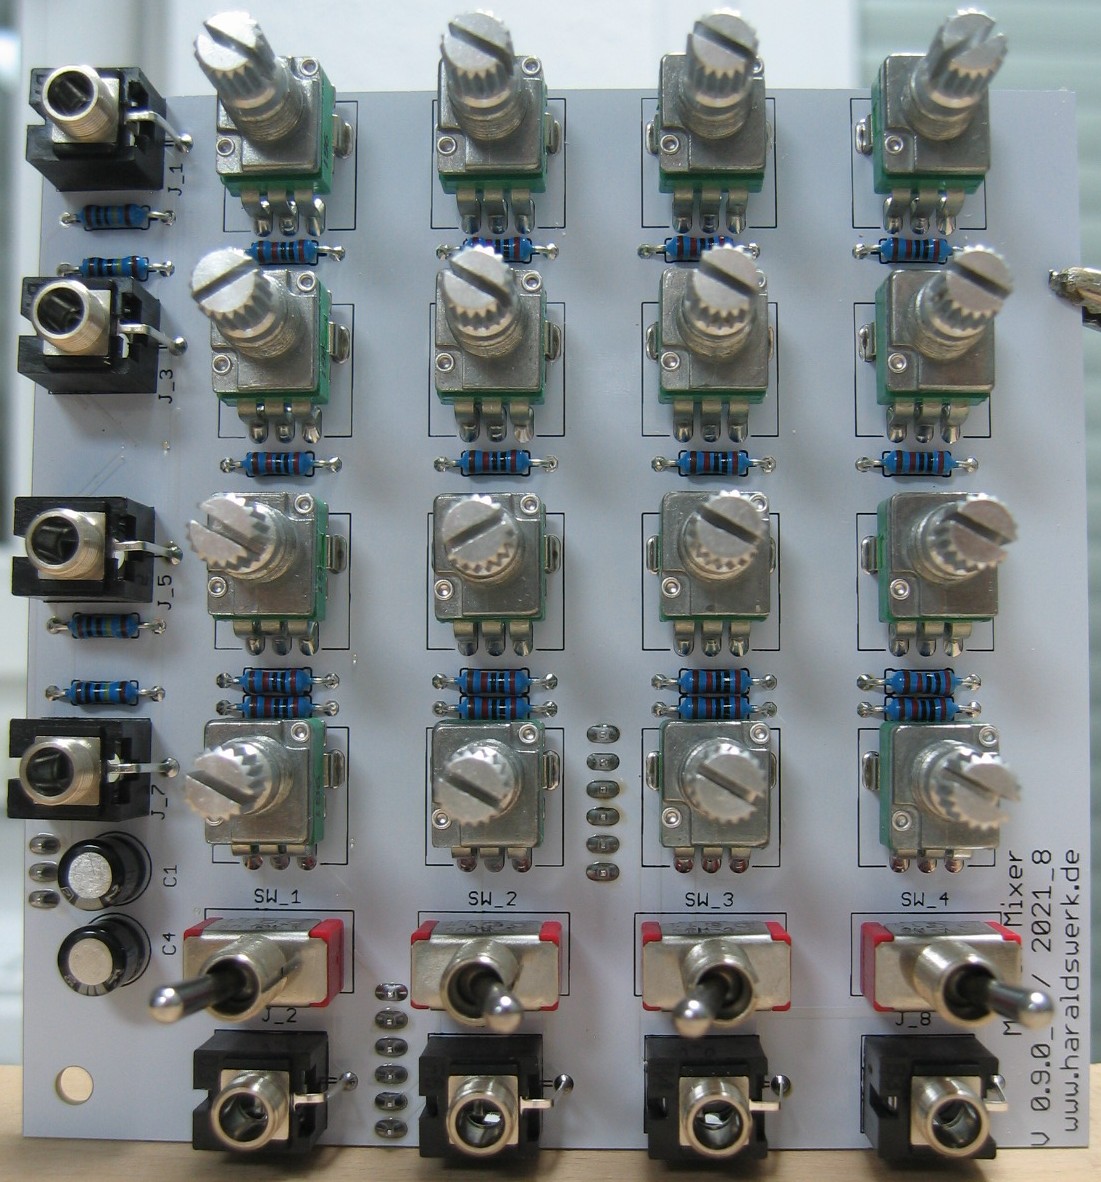 Matrix Mixer populated control PCB